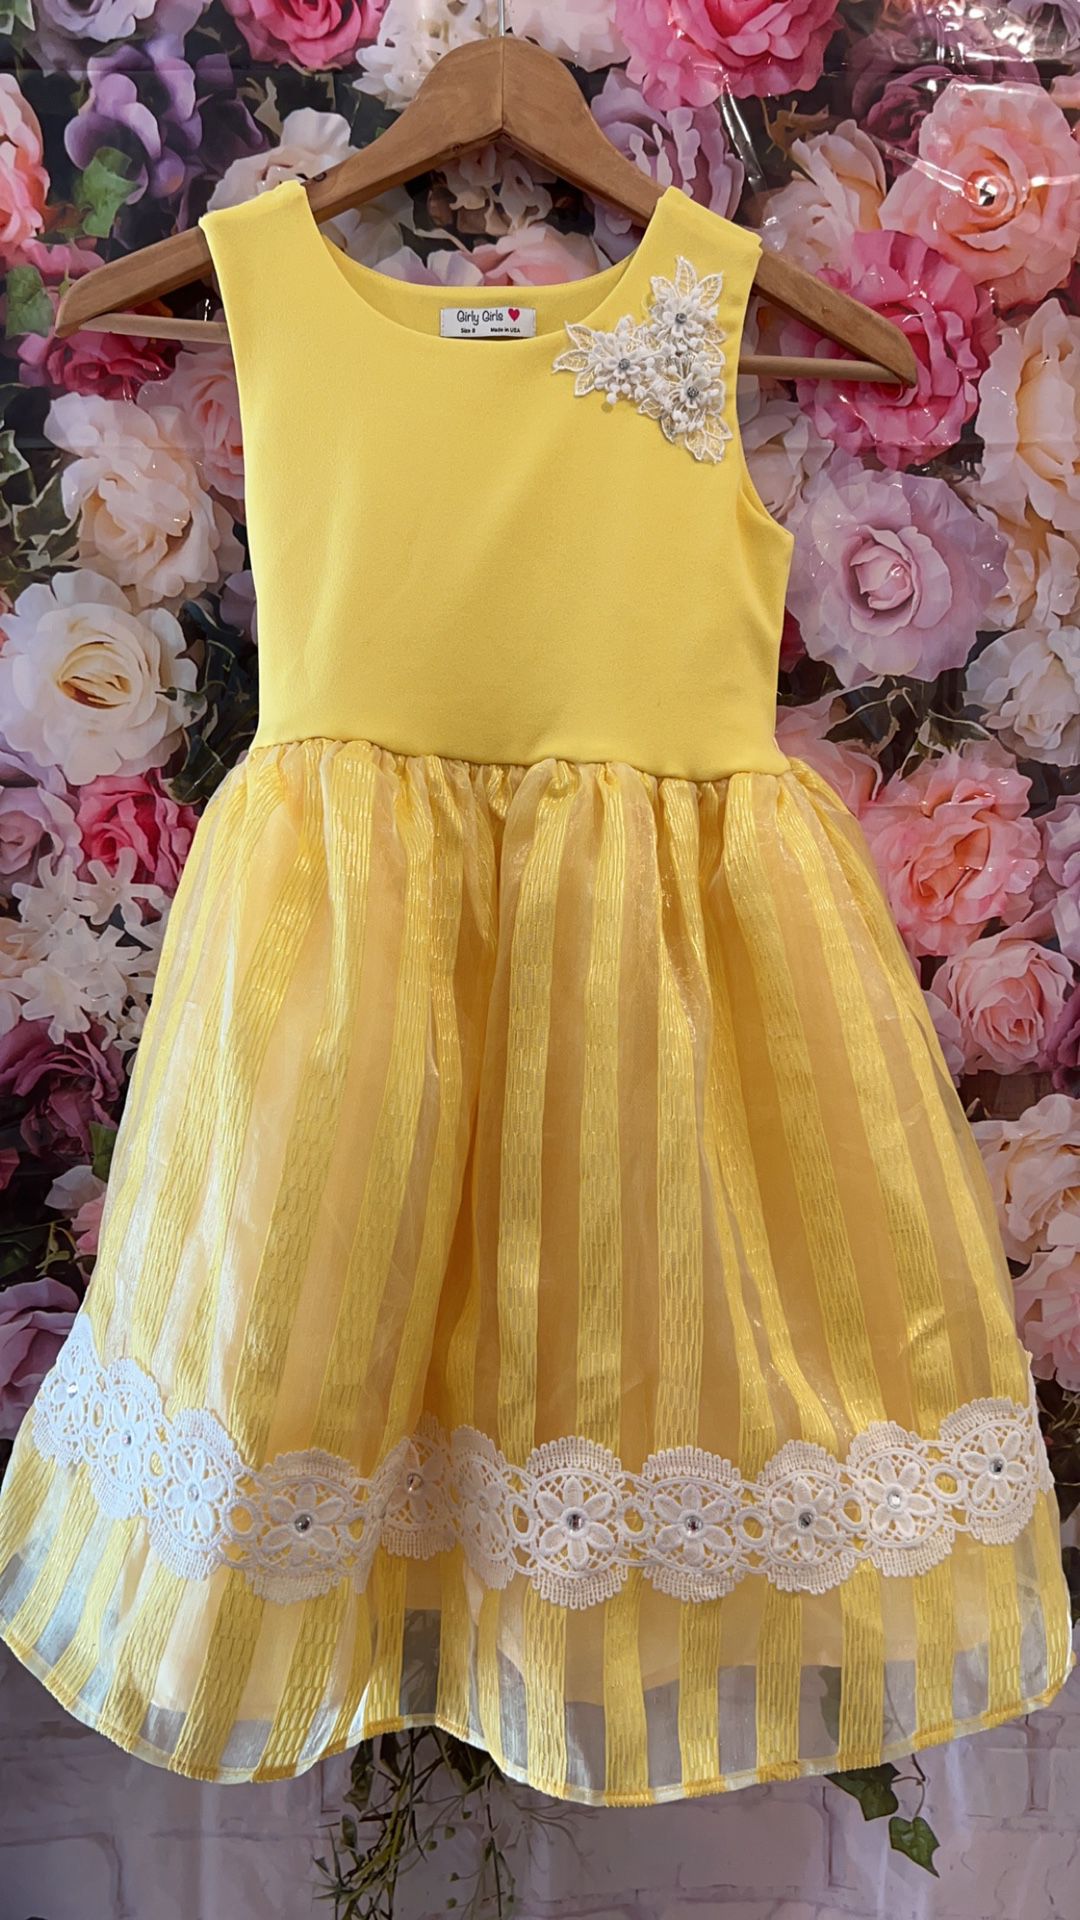 Size 8 girls yellow dress